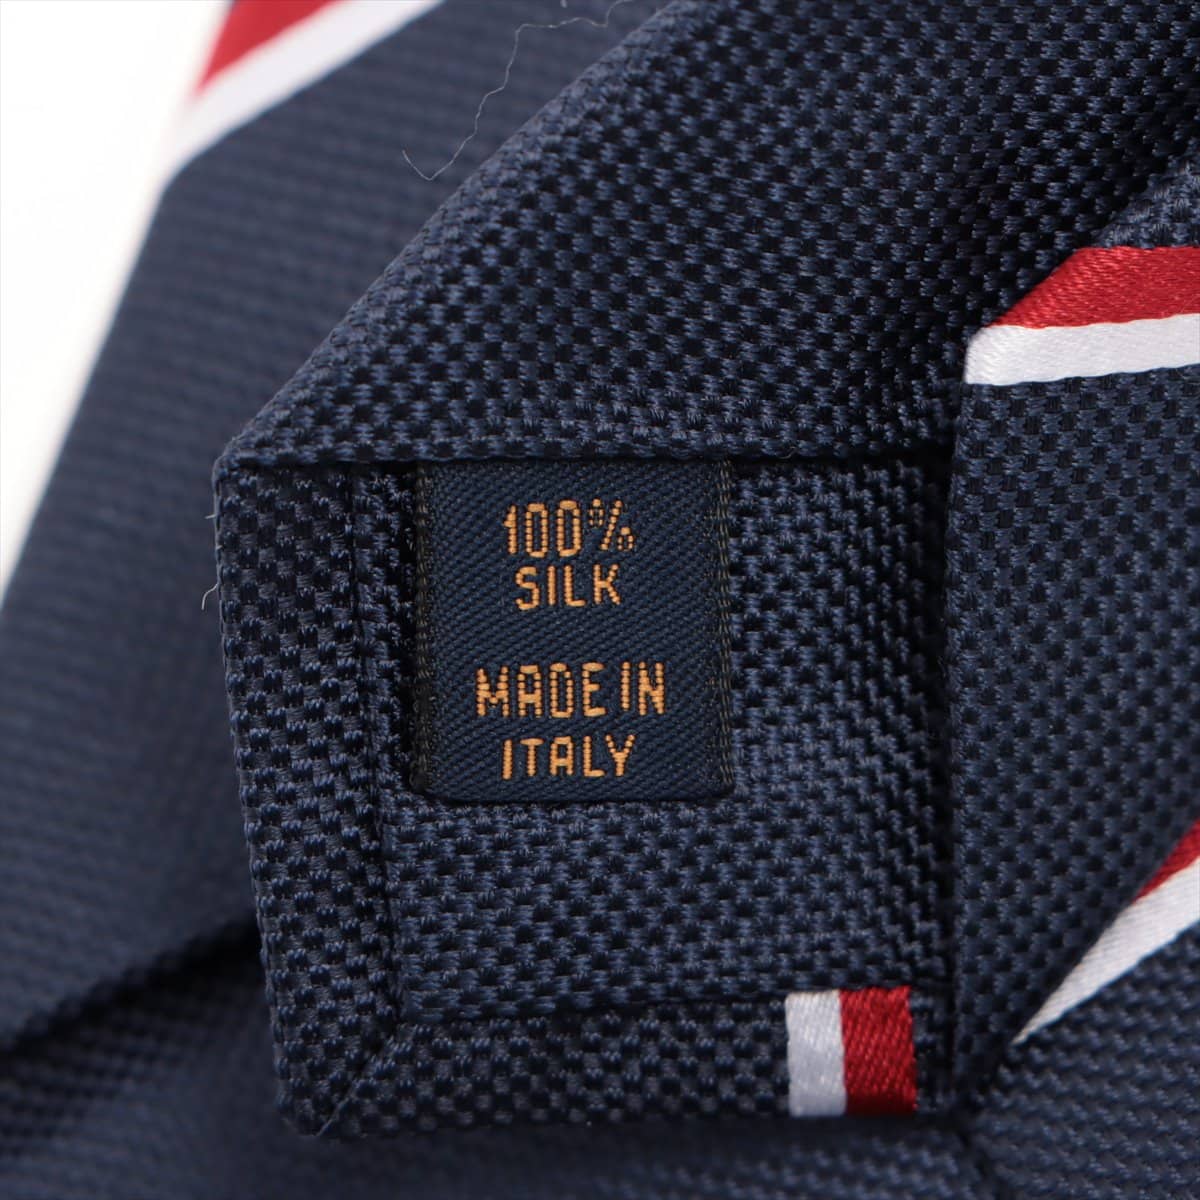 Louis Vuitton M76859 Cravat LV stripes Gaston 7CM MR0261 Necktie Silk Navy x red